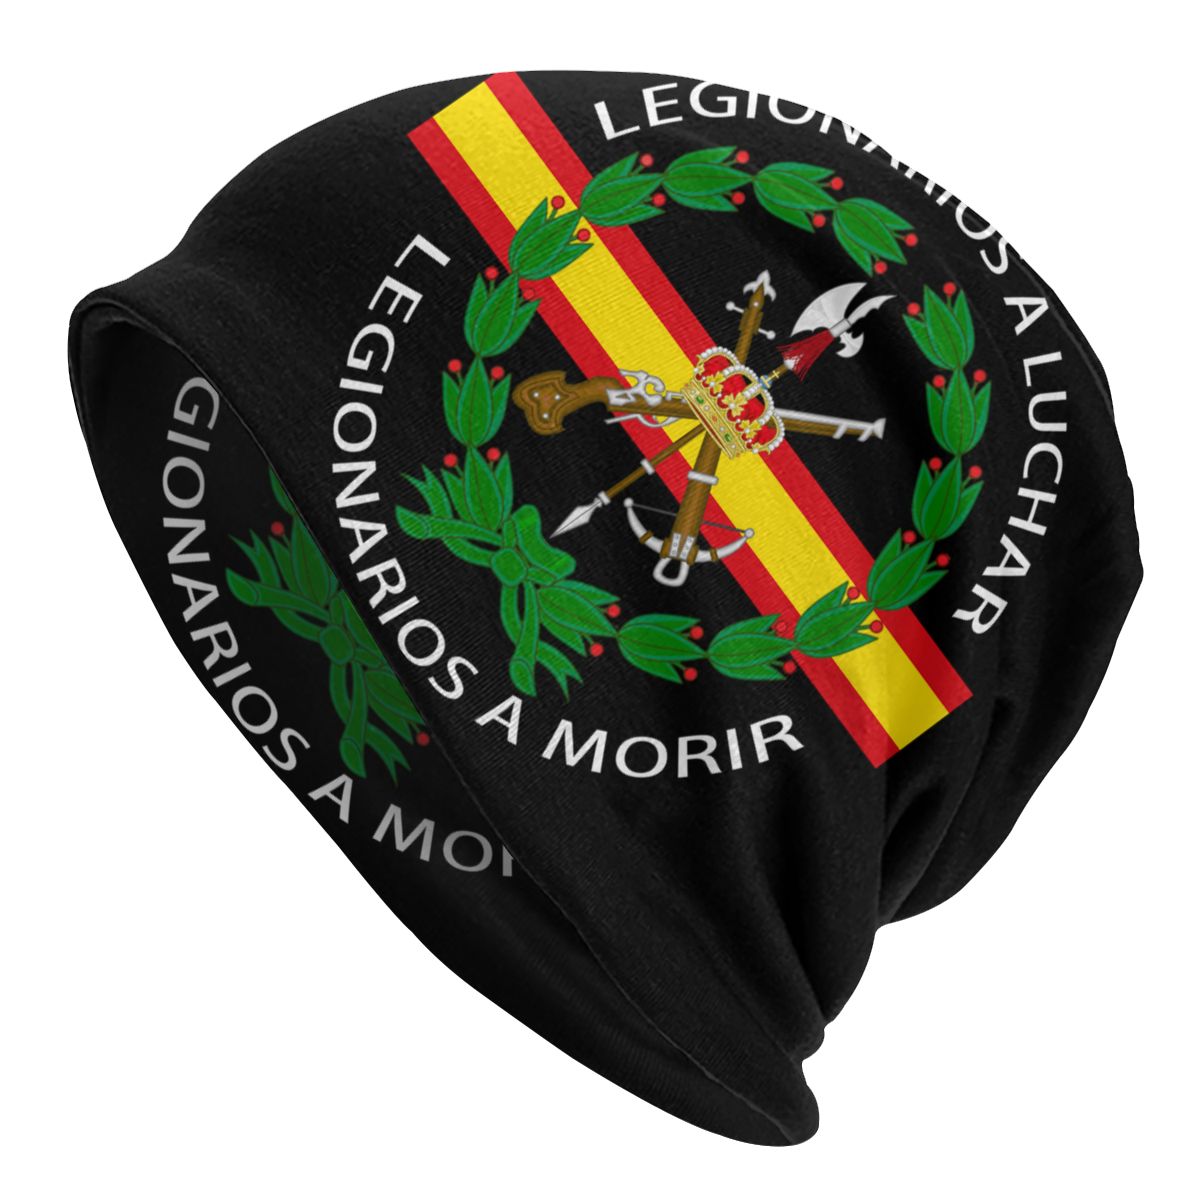 Legión Española - Últimas noticias de Legión Española en Ideal